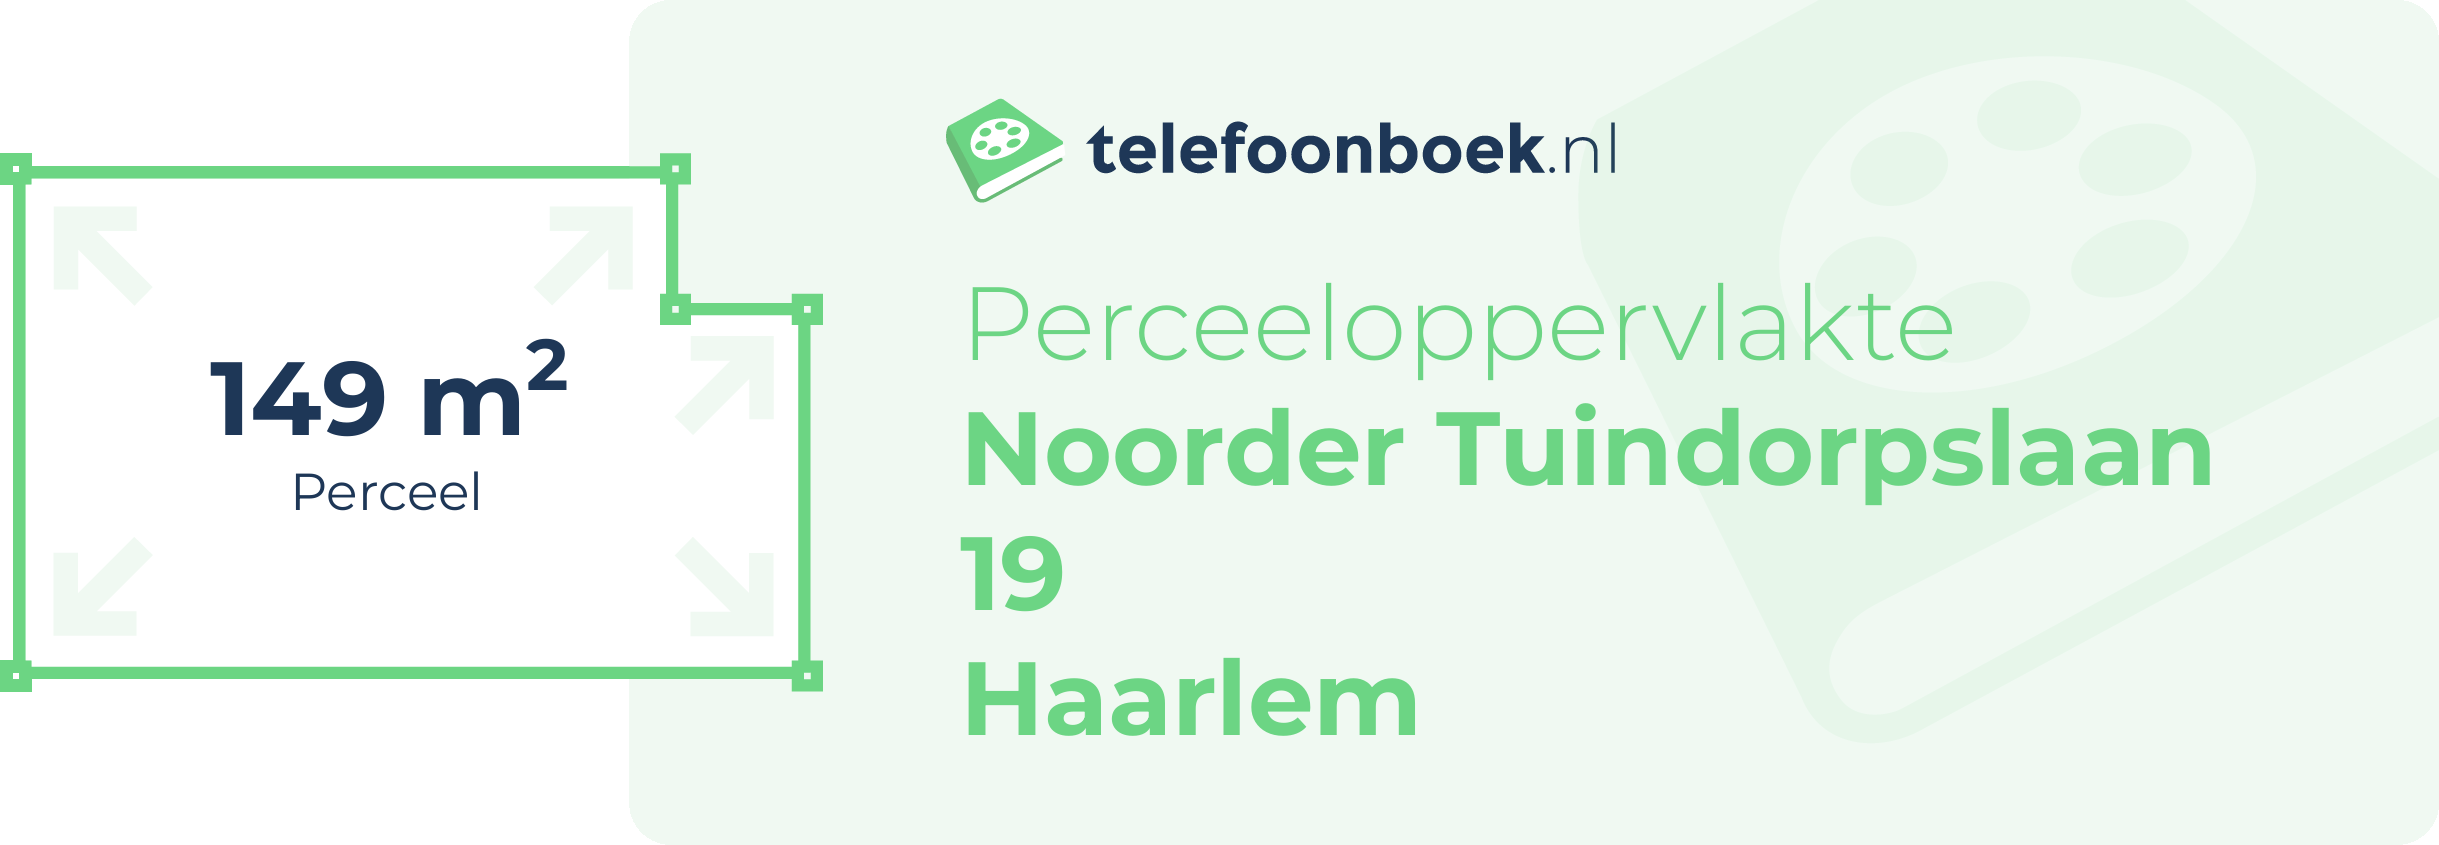 Perceeloppervlakte Noorder Tuindorpslaan 19 Haarlem